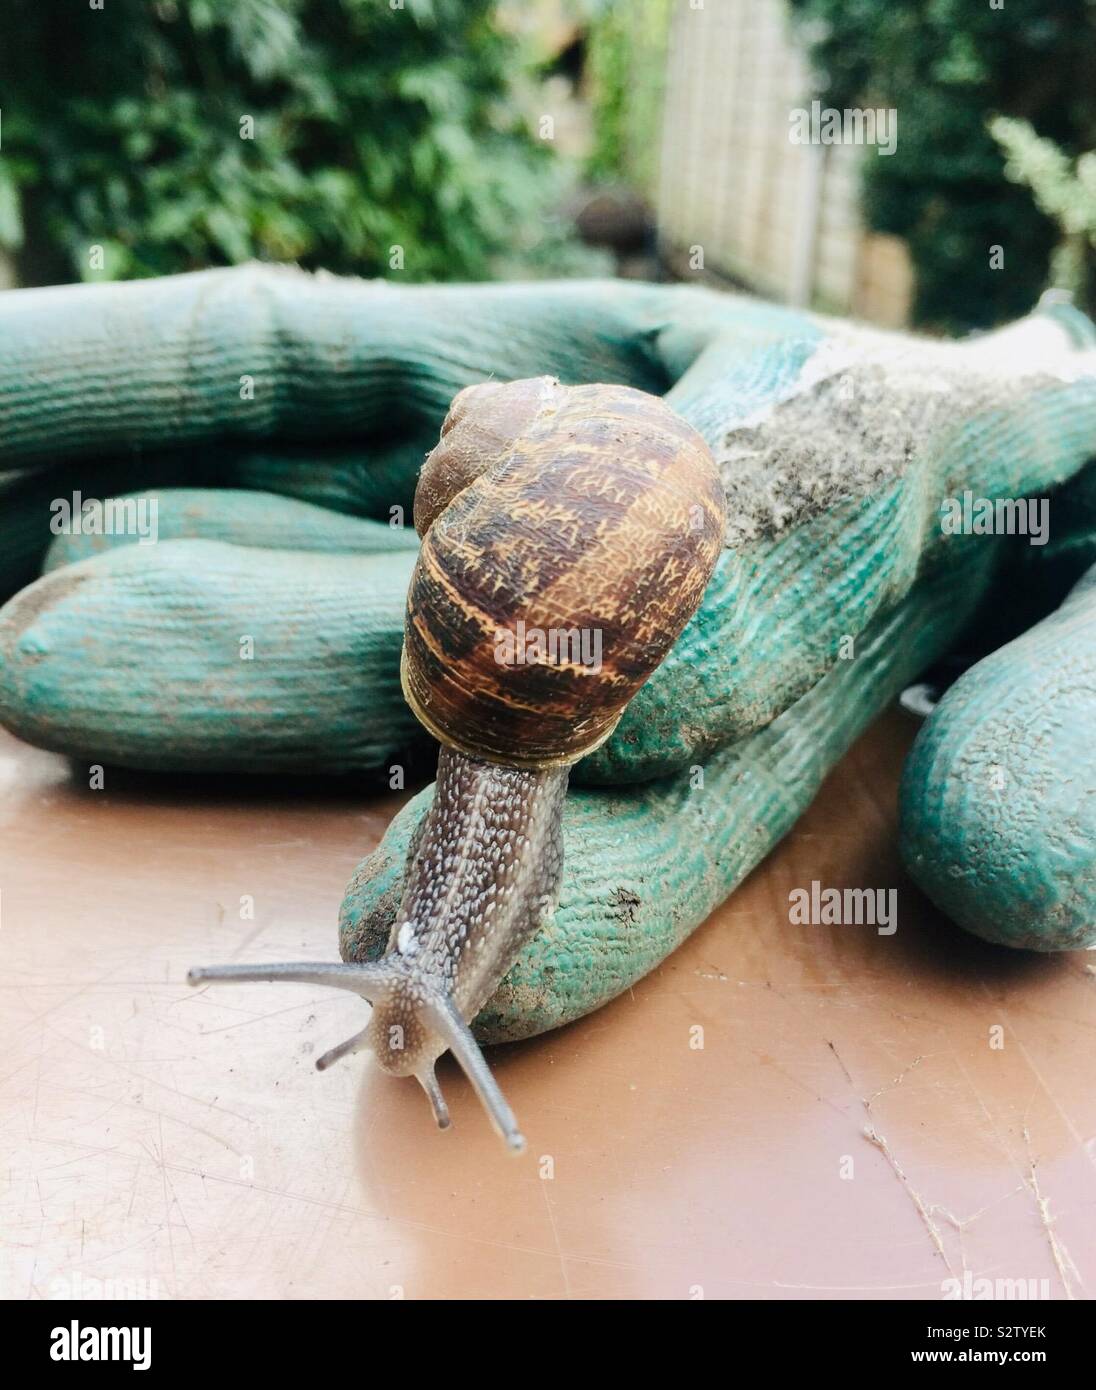 Snail on gardening glove Stock Photo